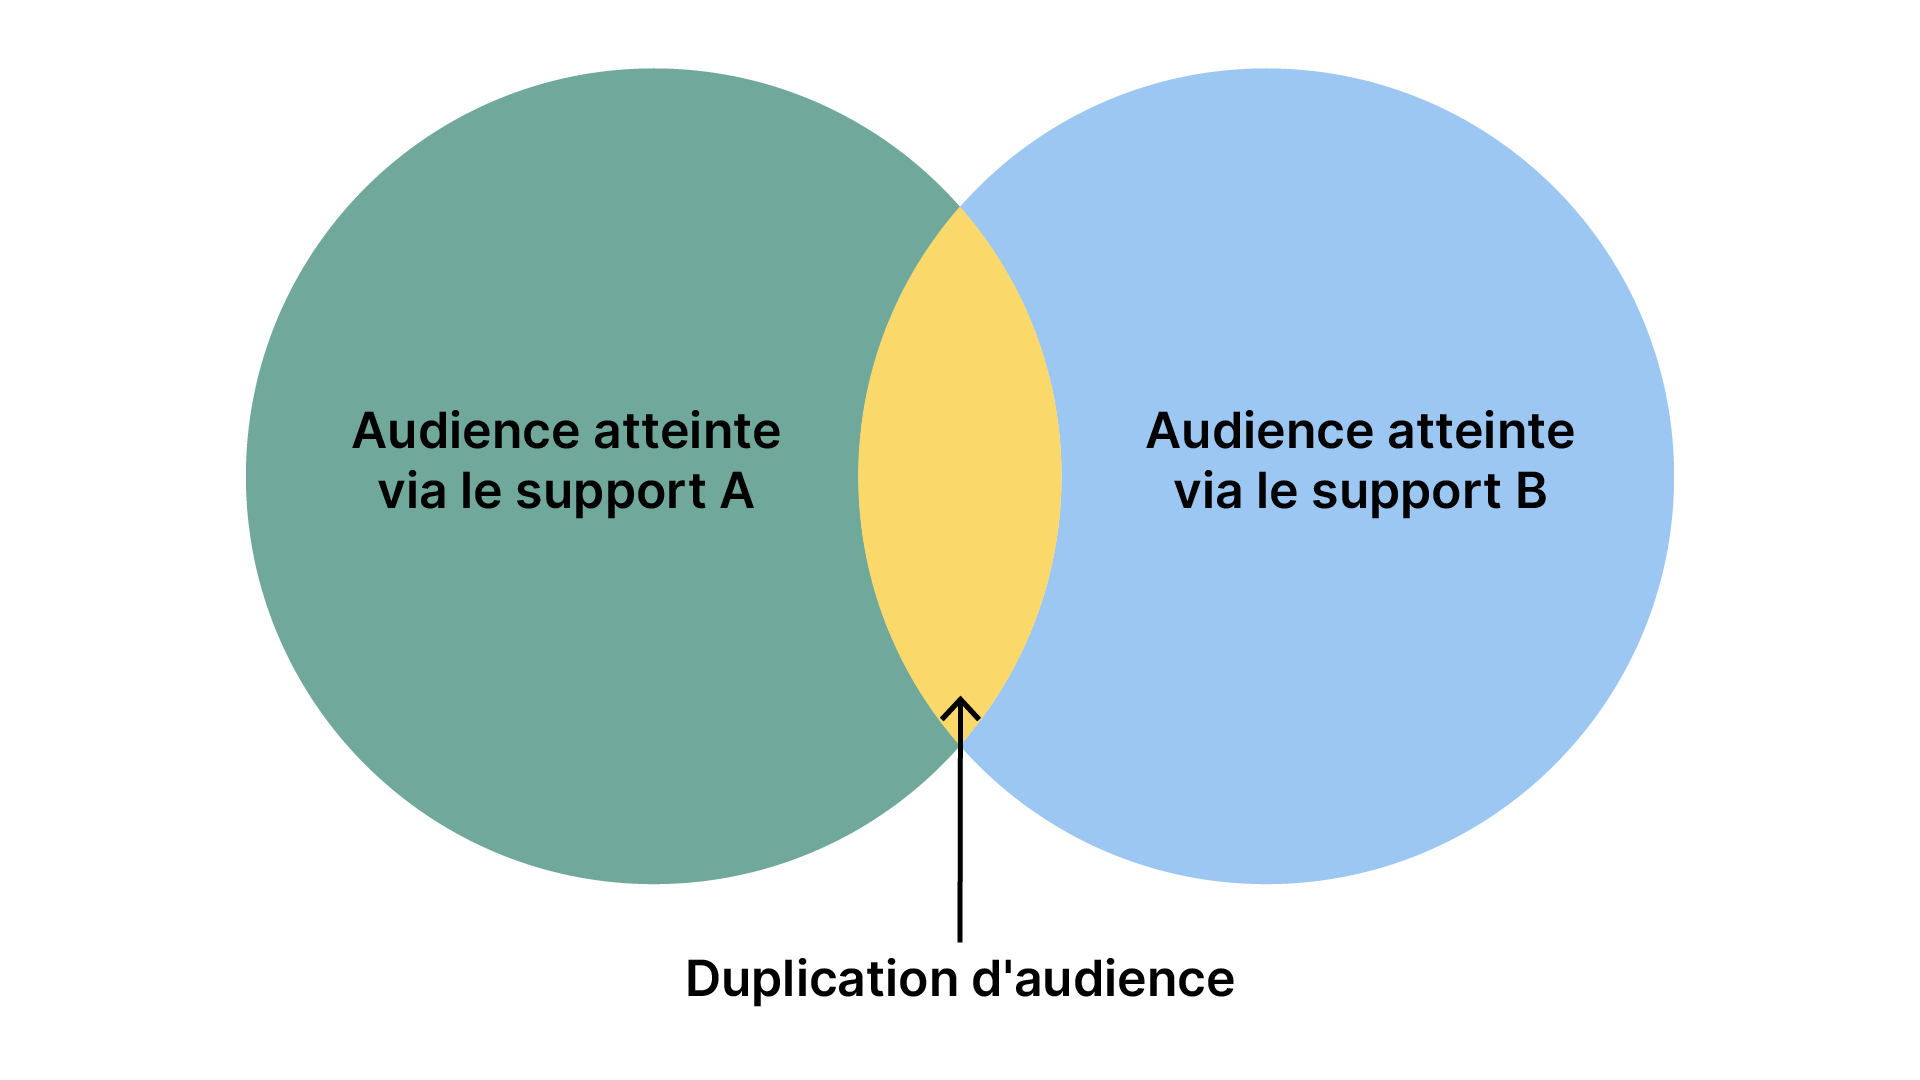 Schéma duplication d'audience représentant 2 cercles audience du support A et audience du support B qui se rejoignent. La partie commune est appelée la duplication d'audience.